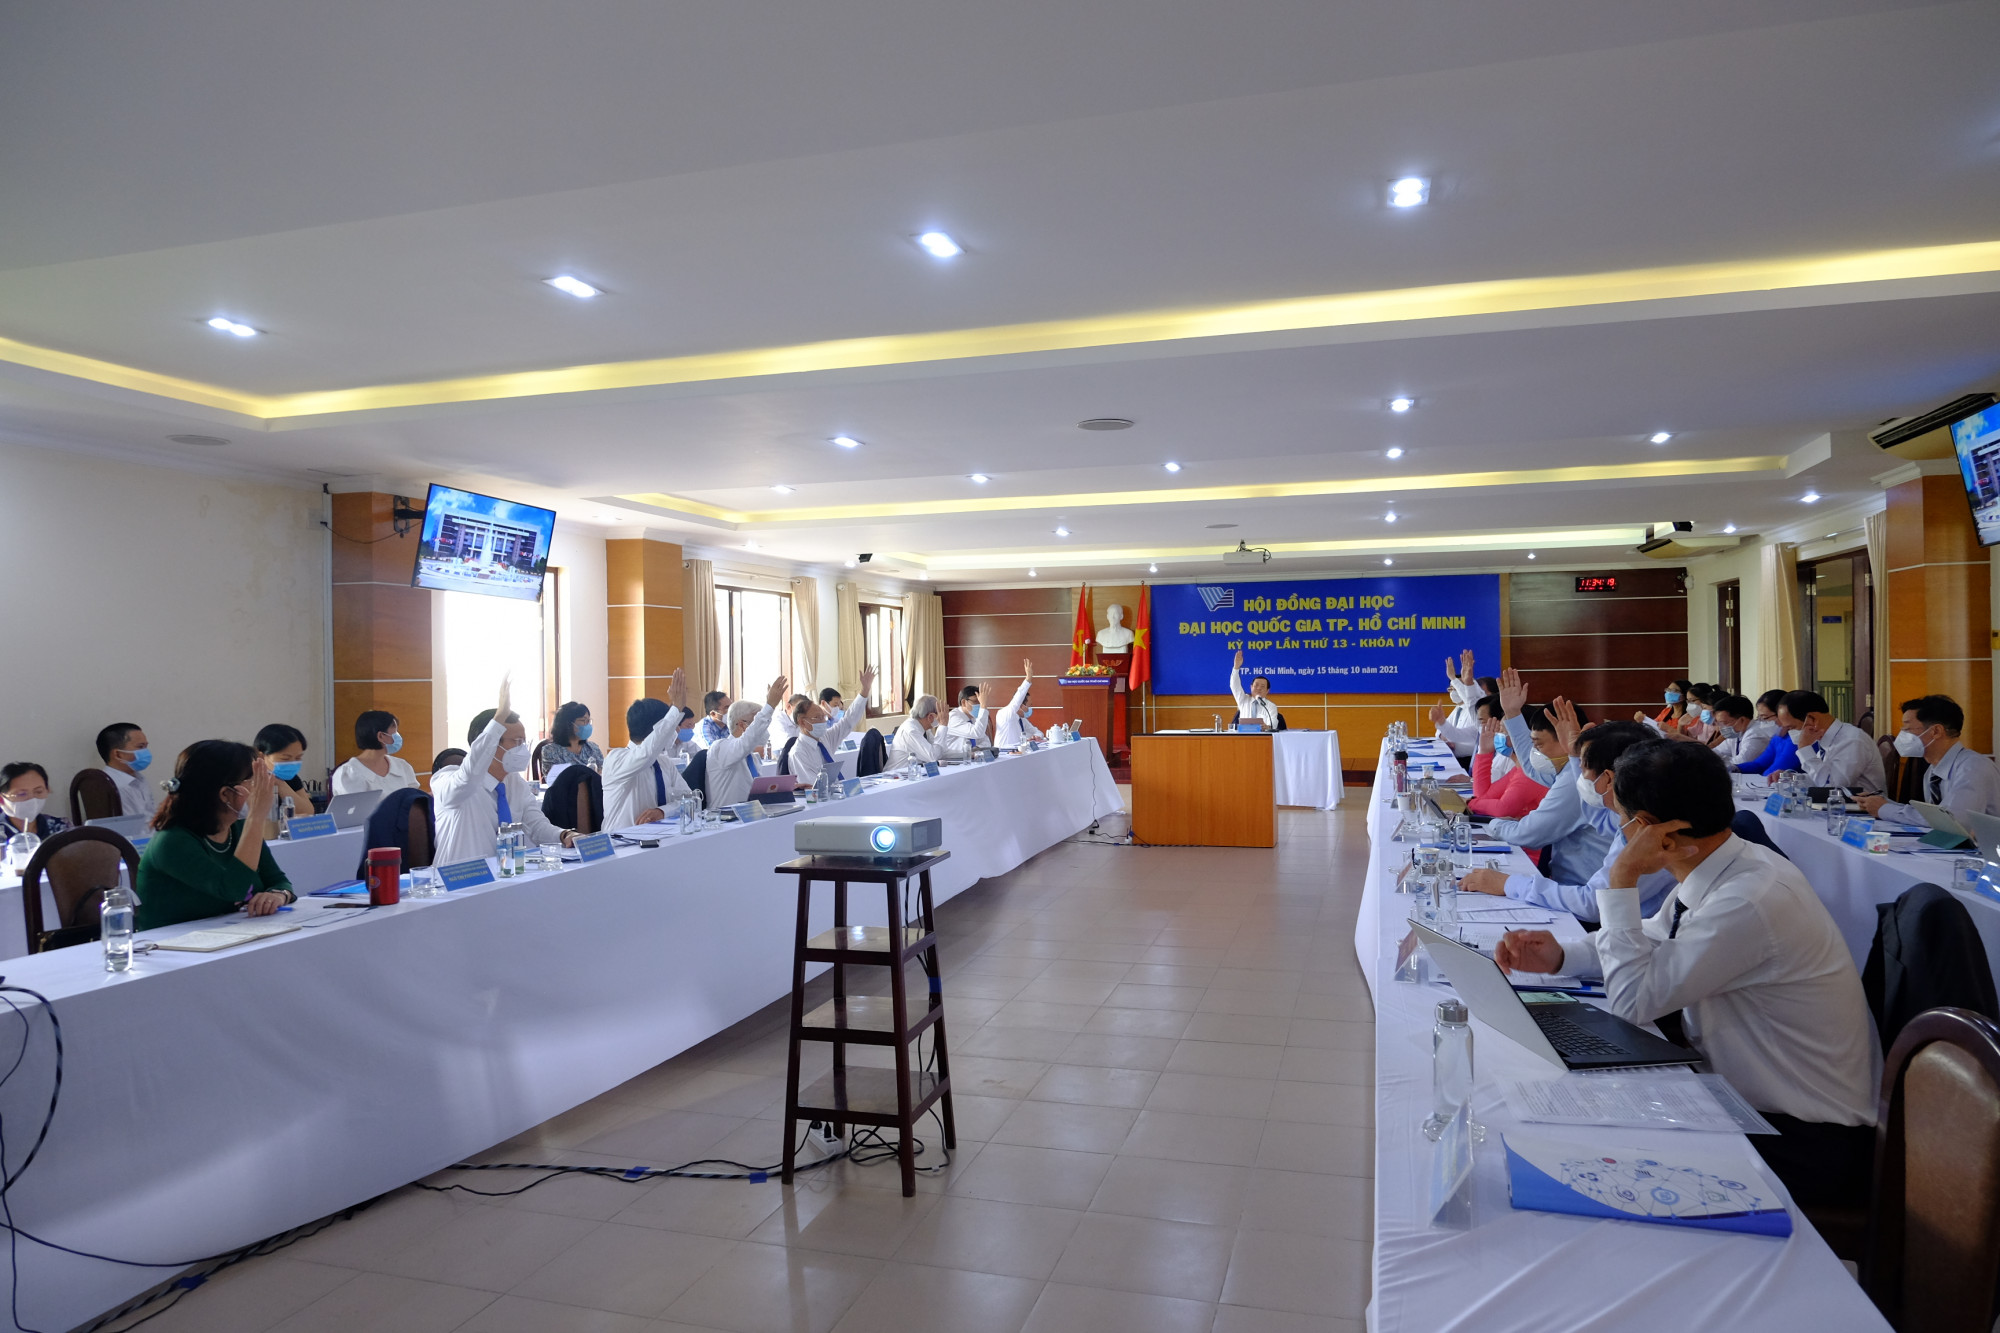 Hội đồng Đại học Quốc gia TPHCM thông qua nhiều quyết sách tại kỳ họp lần 13 khoá IV- Ảnh: Đoàn Châu